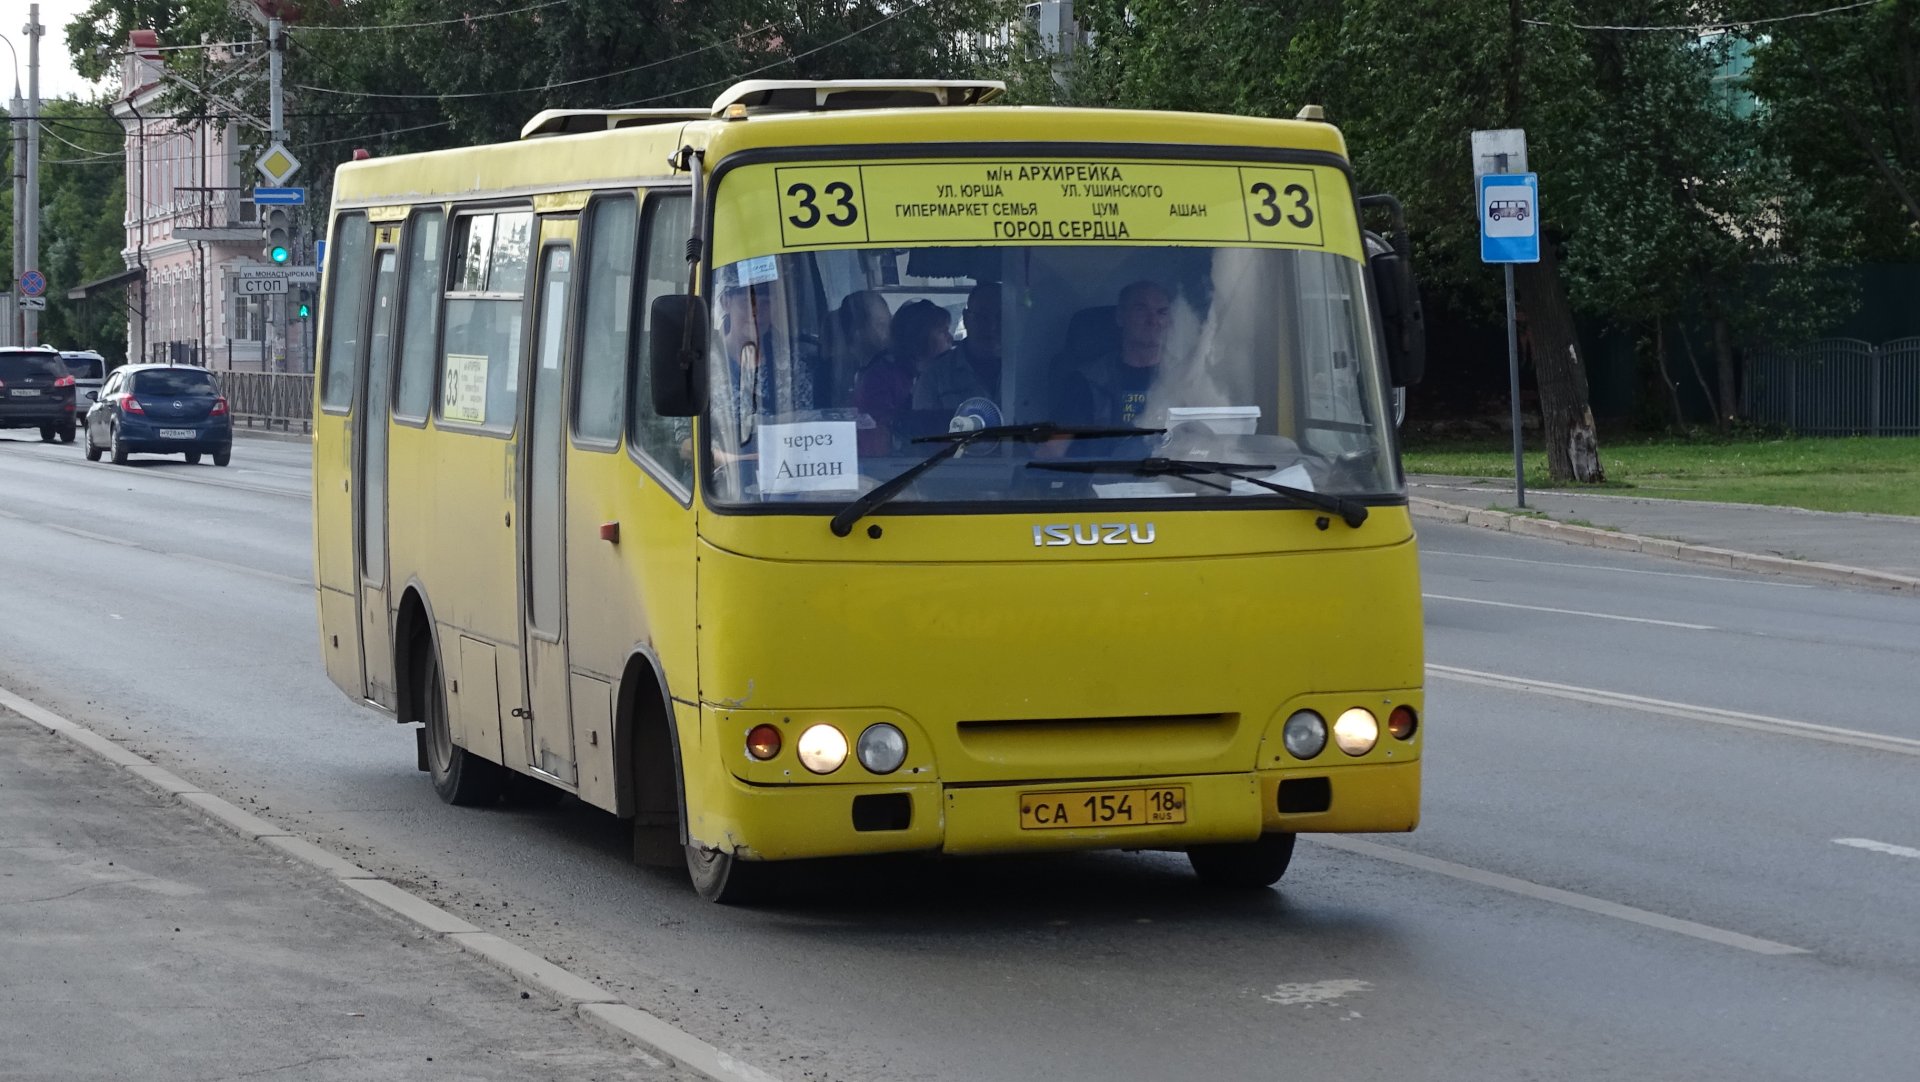 33 автобус пермь на сегодня. Автобусы Пермь. Автобус 33. Пермские автобусы 33. Автобусы малой вместимости.